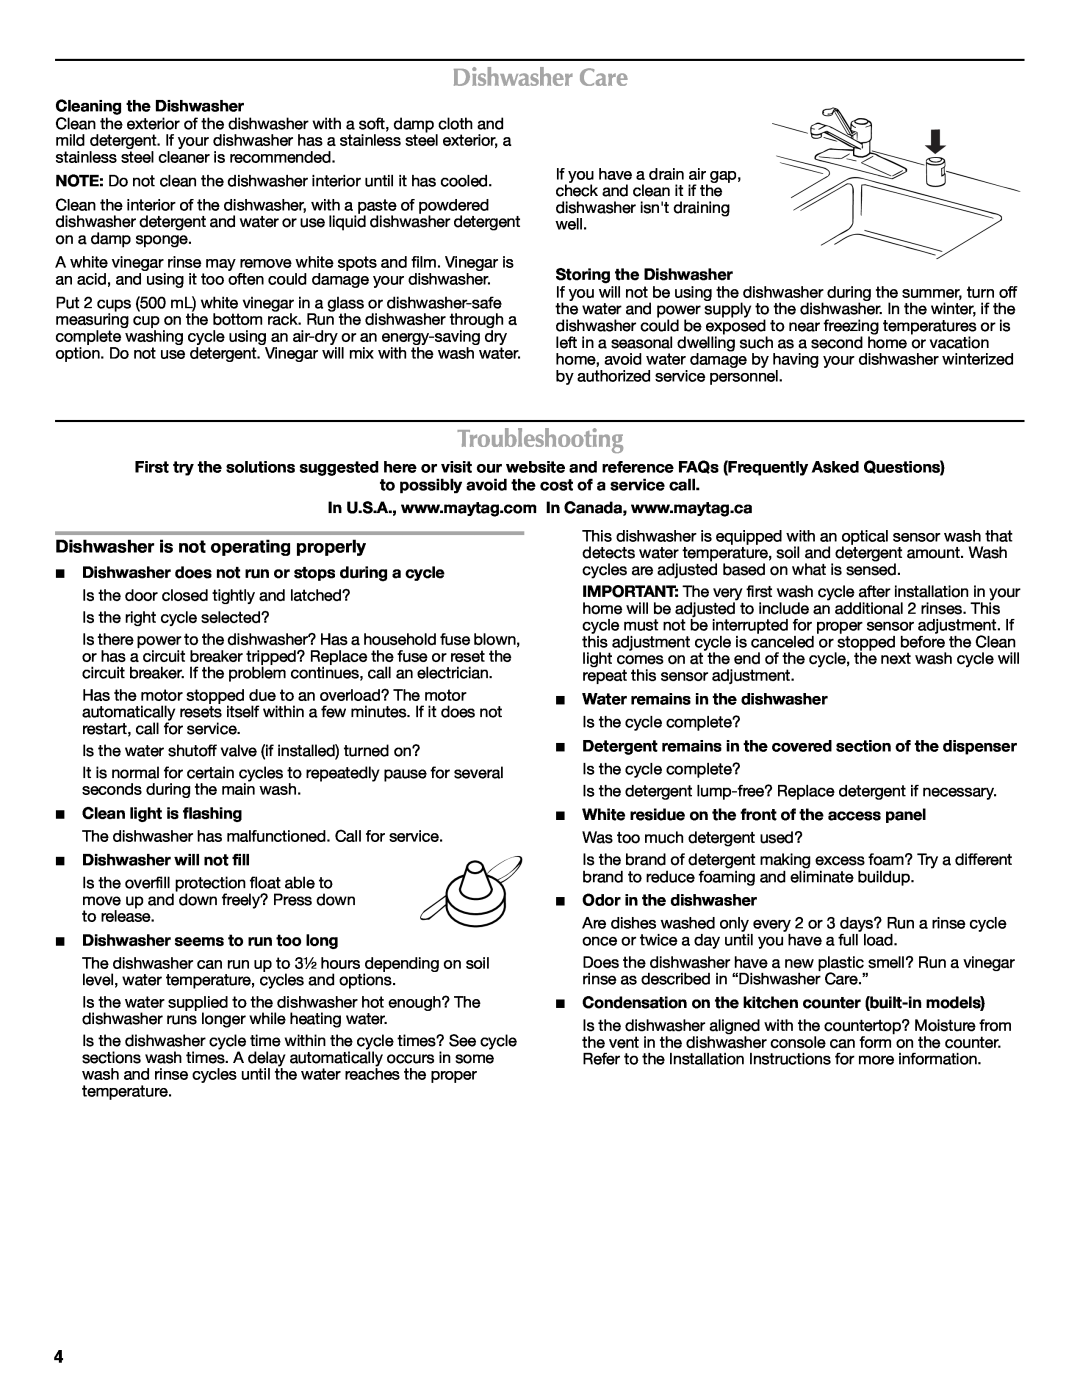 Maytag MDB4621AWW0 important safety instructions Dishwasher Care, Troubleshooting, Dishwasher is not operating properly 